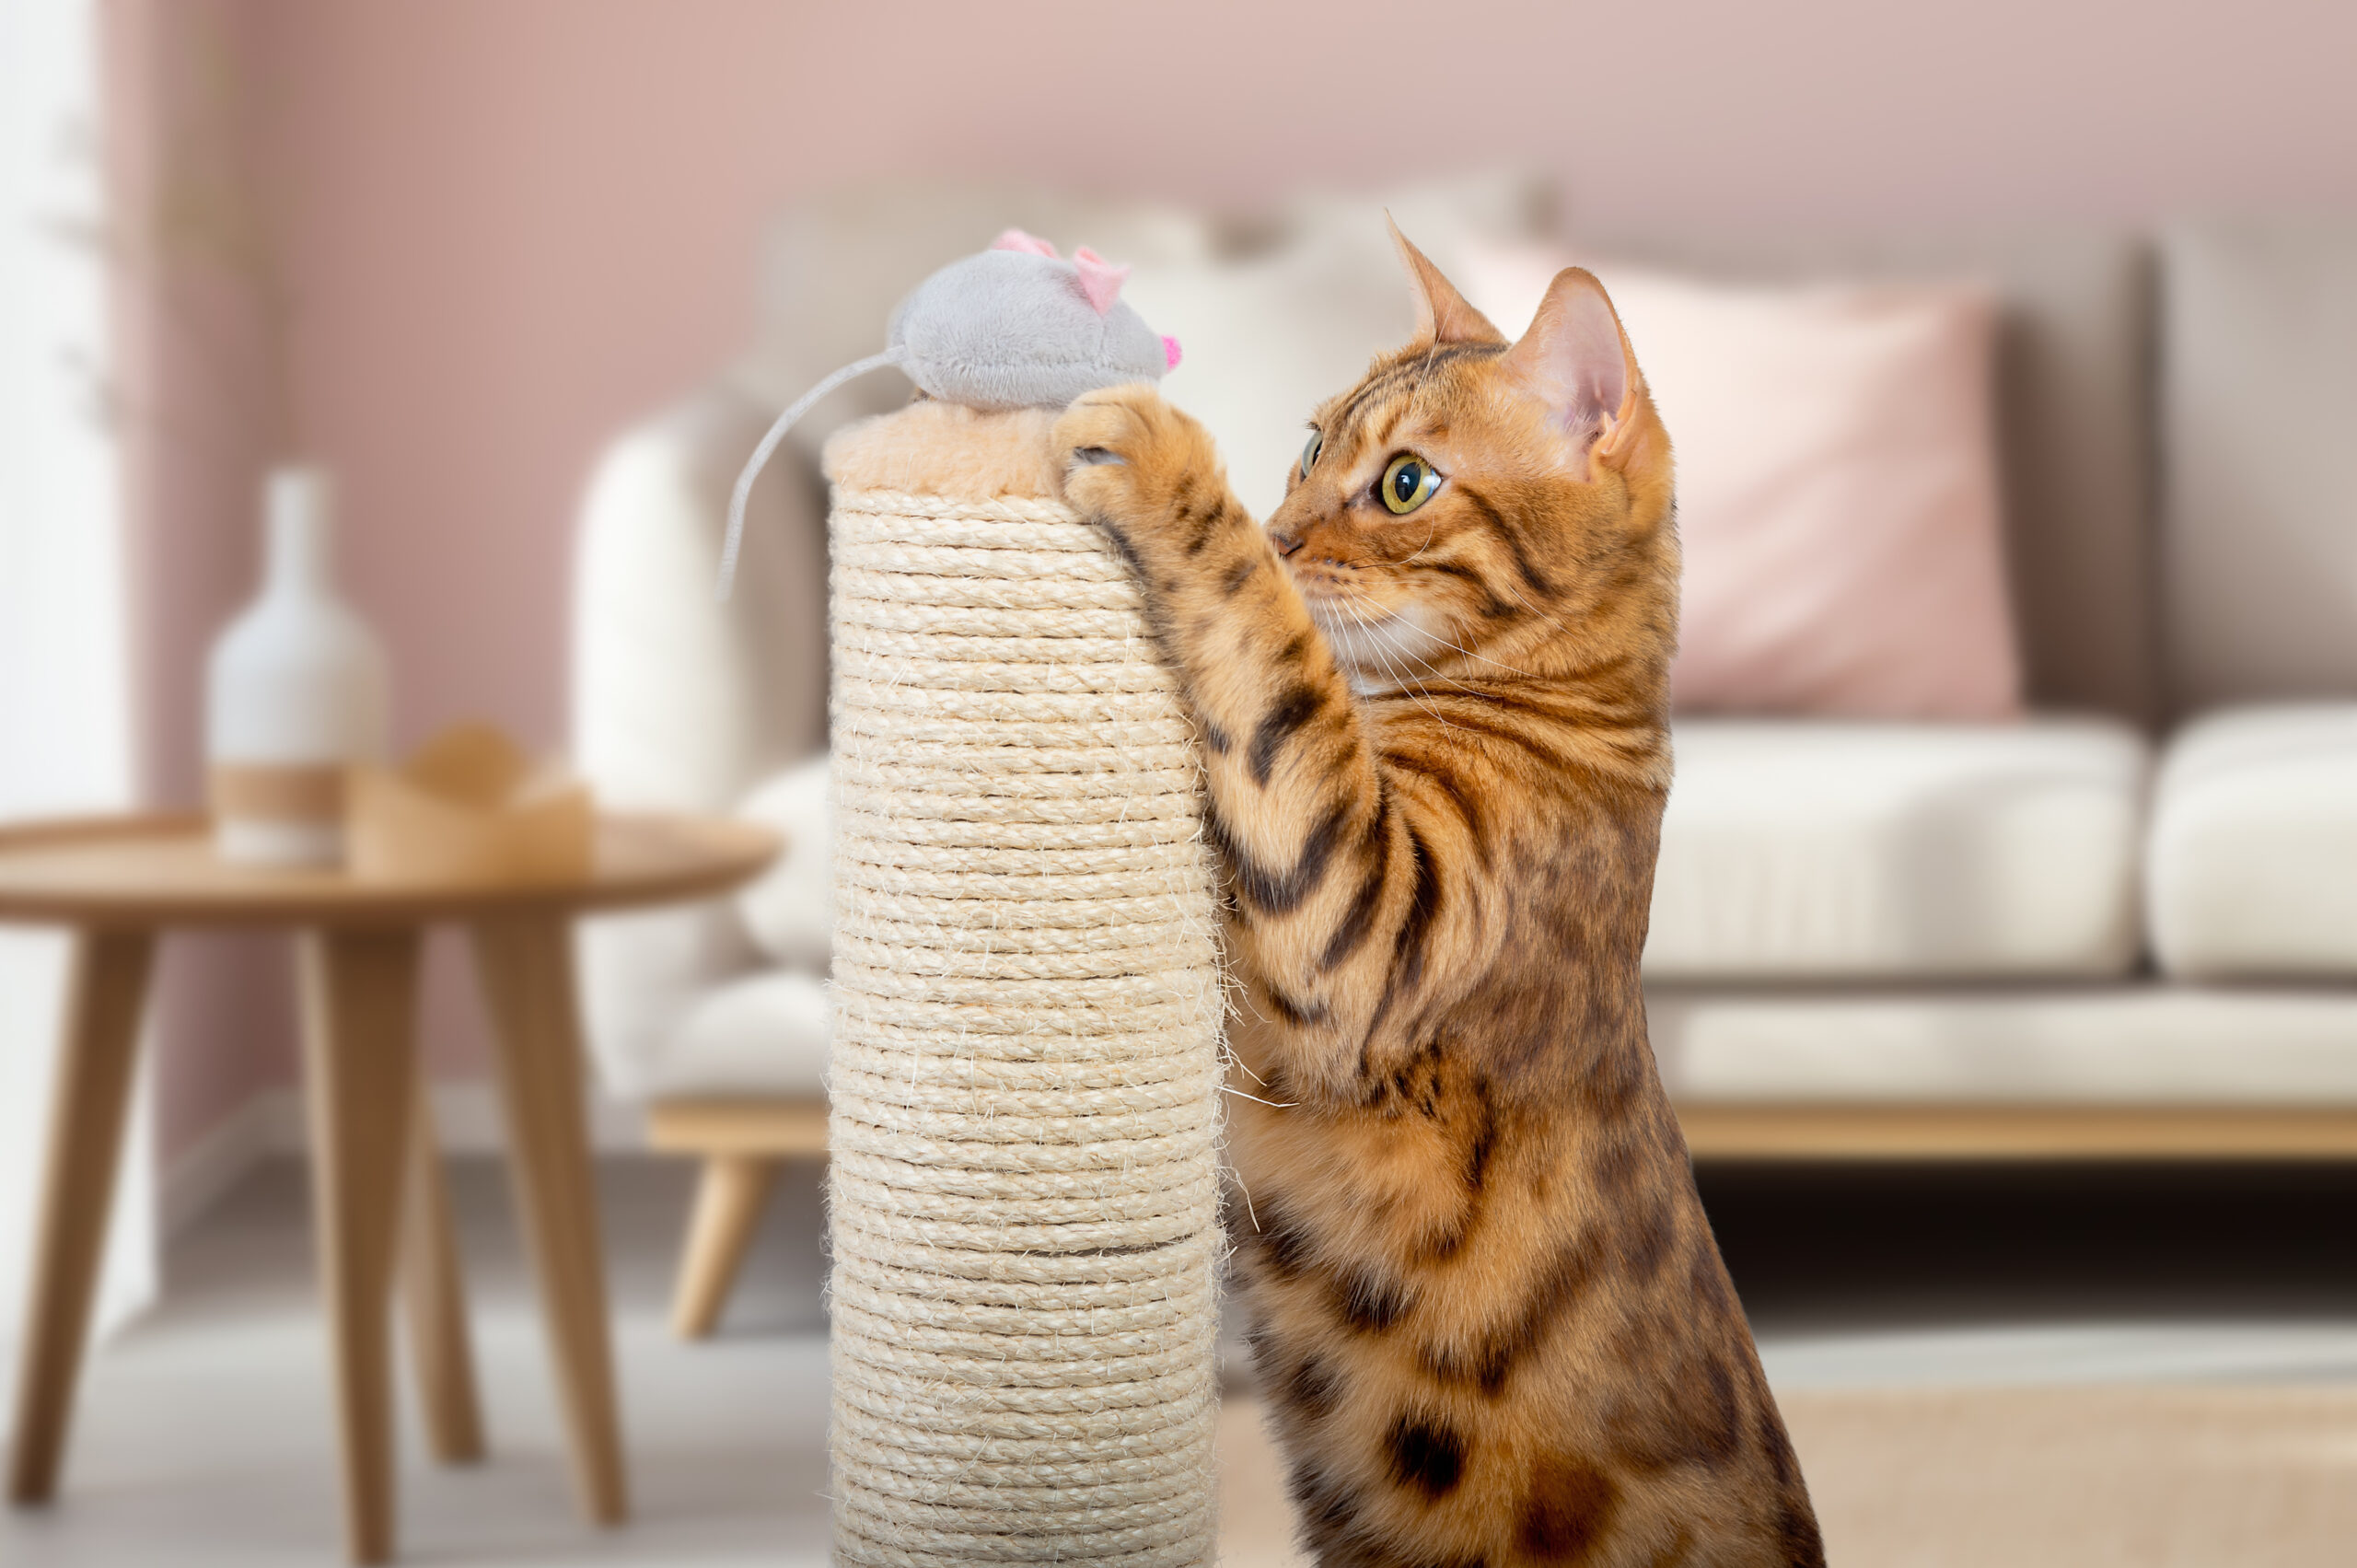 Katzensitting Bengalkatze spielt mit einer Spielzeugmaus, die auf einem Kratzstamm liegt